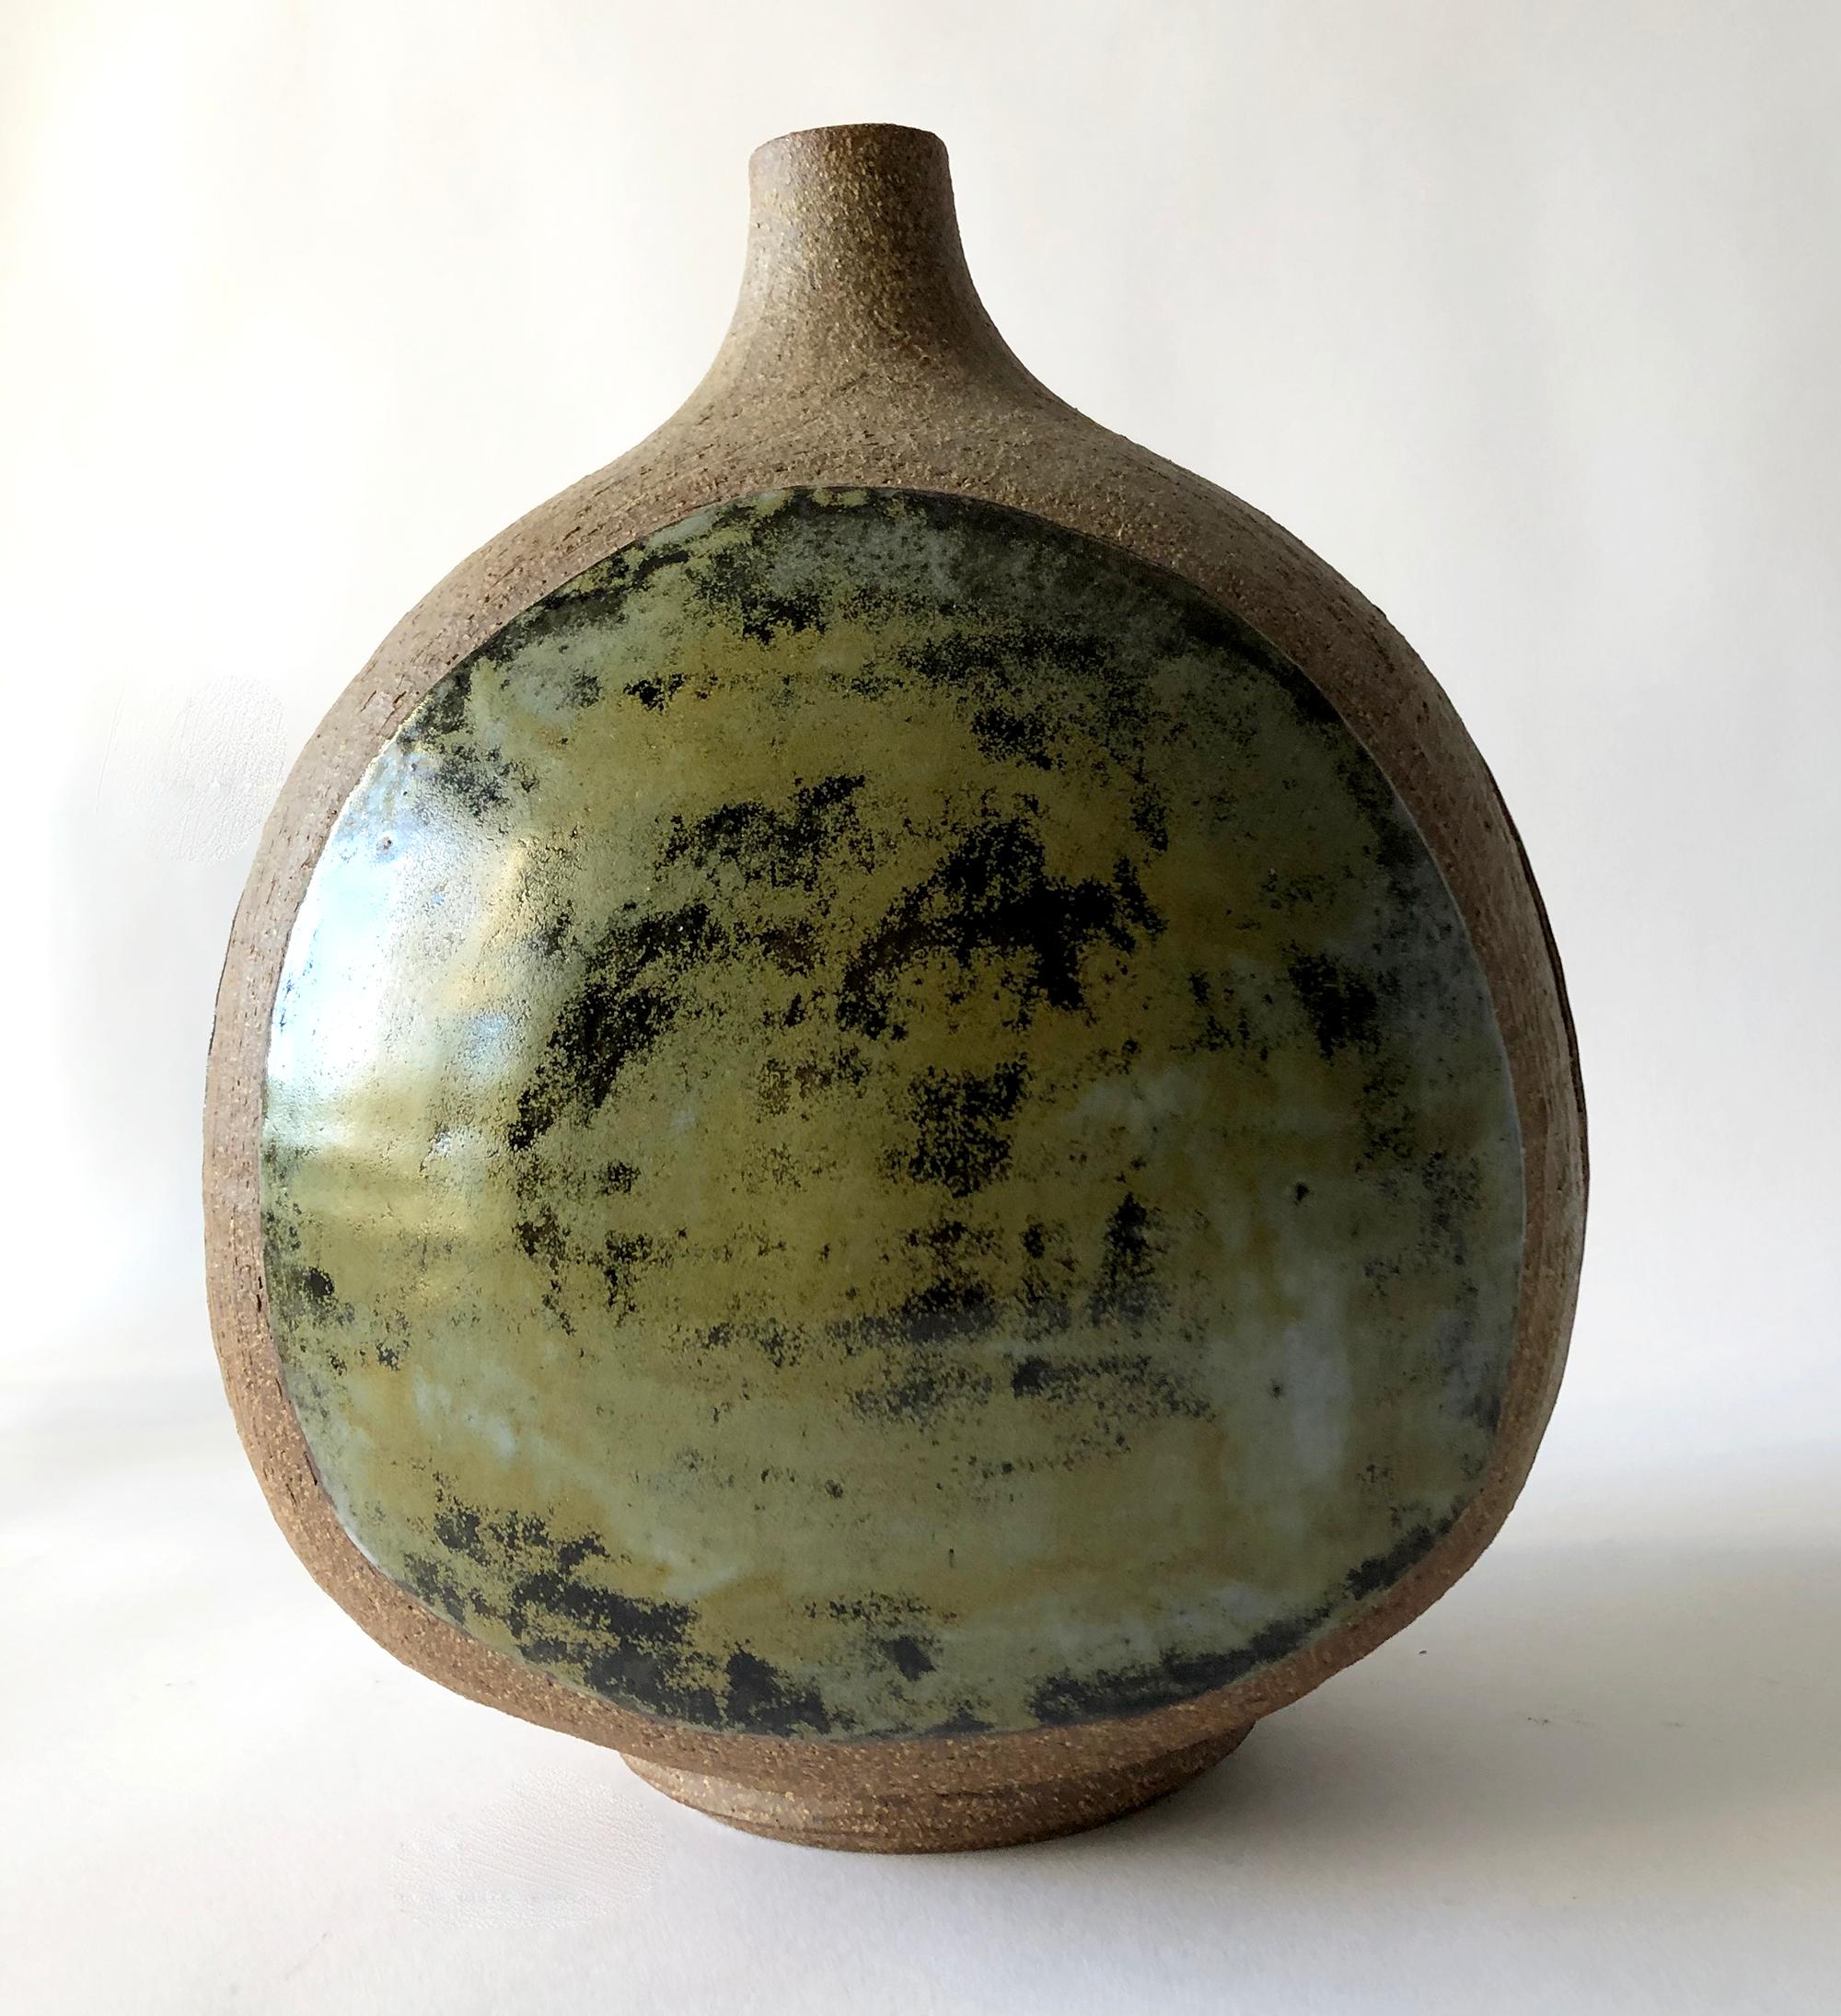 Three sided stoneware vase created by California studio potter Joel Edwards. Vase measures 9.5